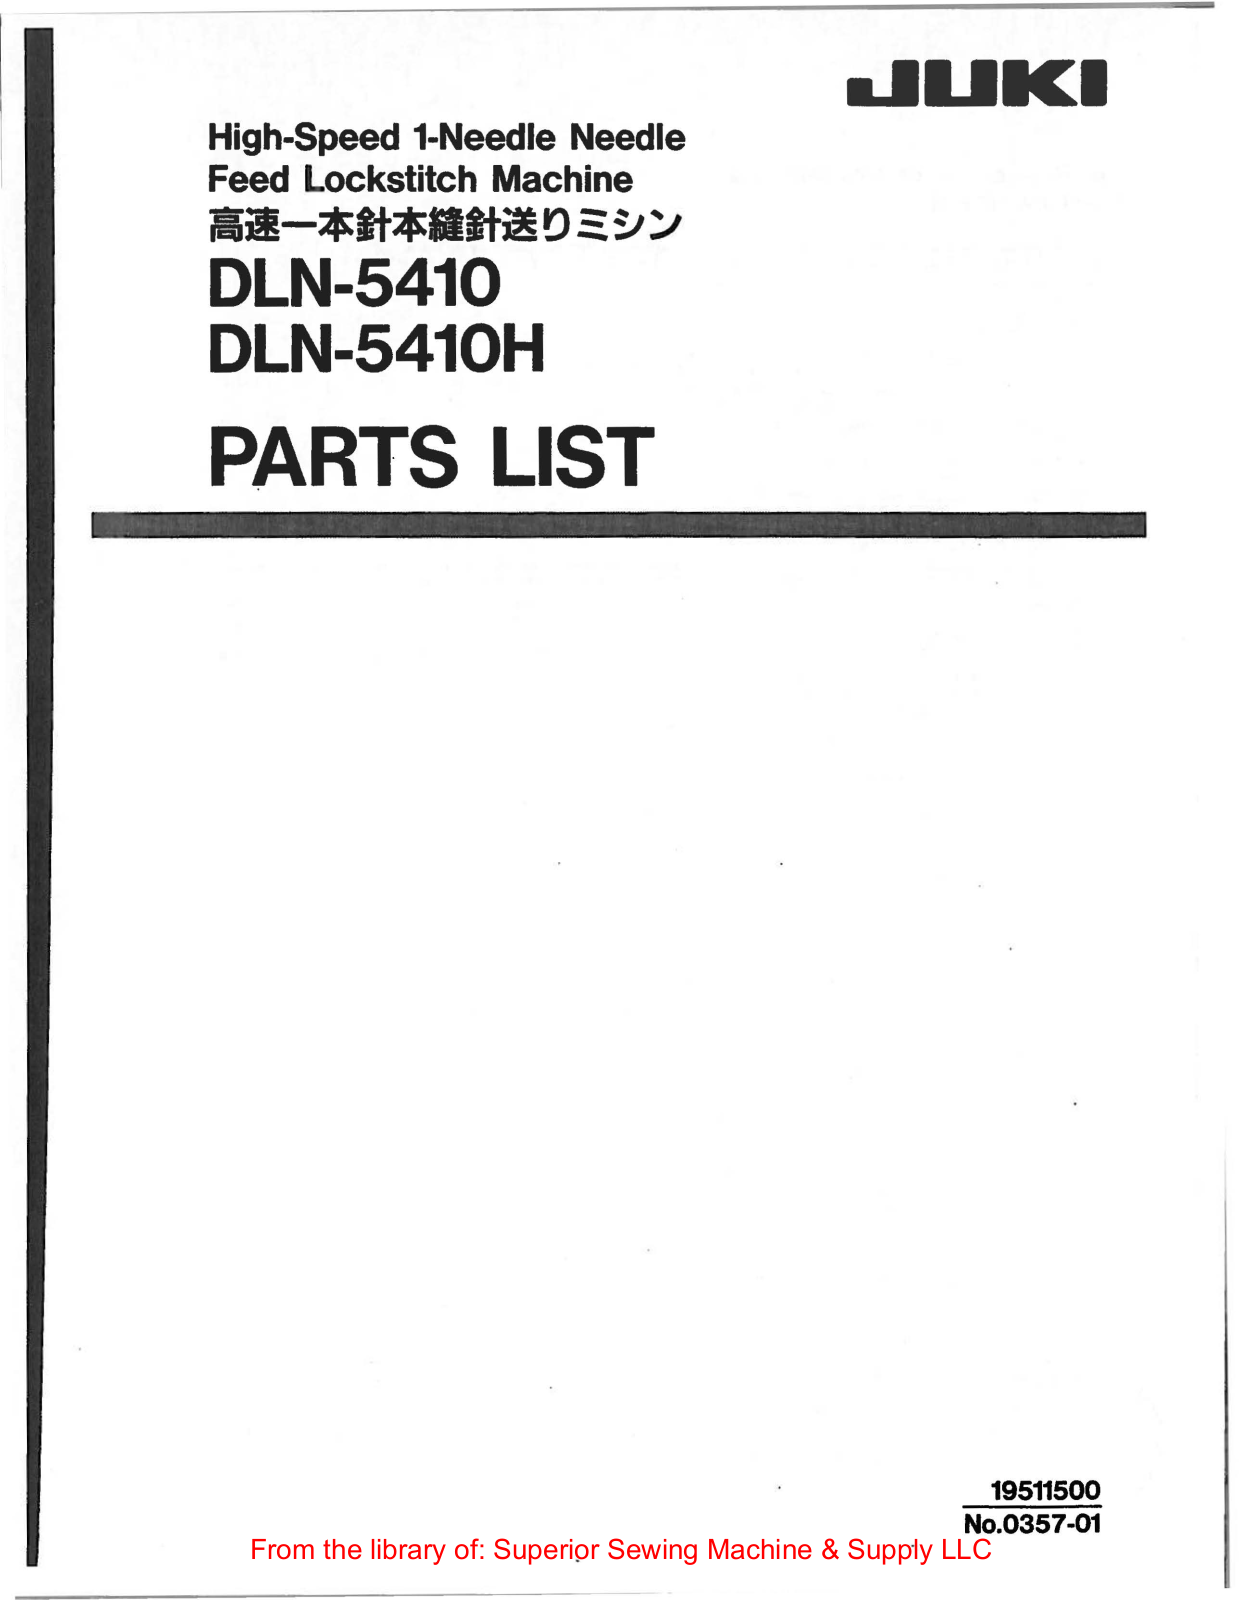 Juki DLN-5410, DLN-5410H Manual